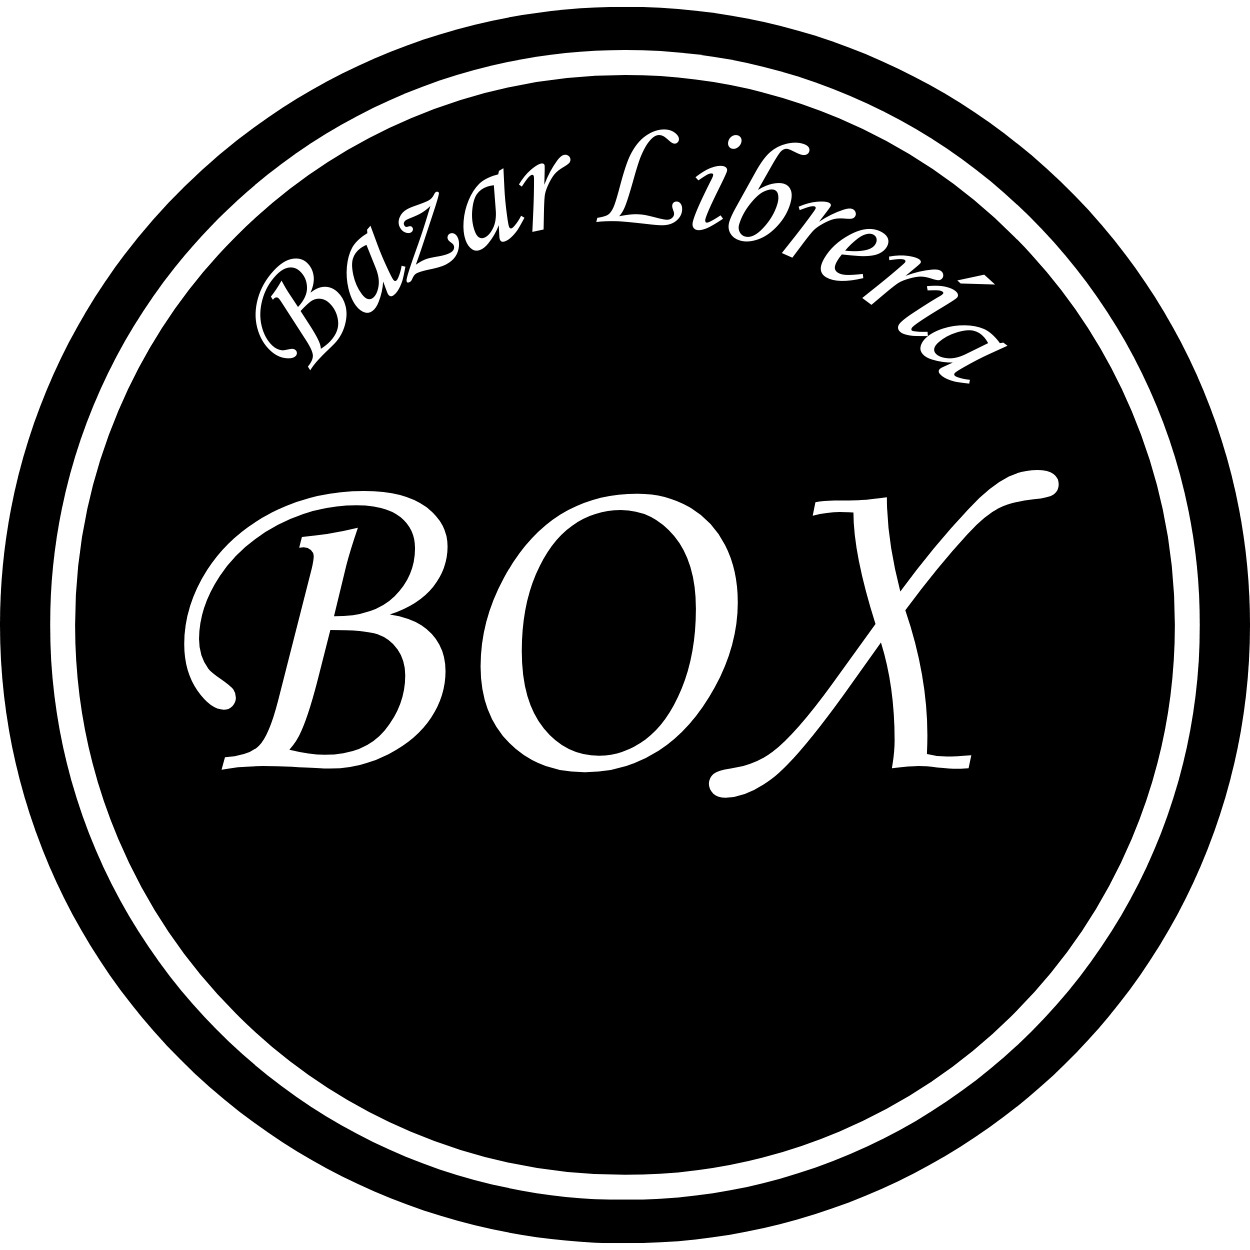 Bazar Librería Box